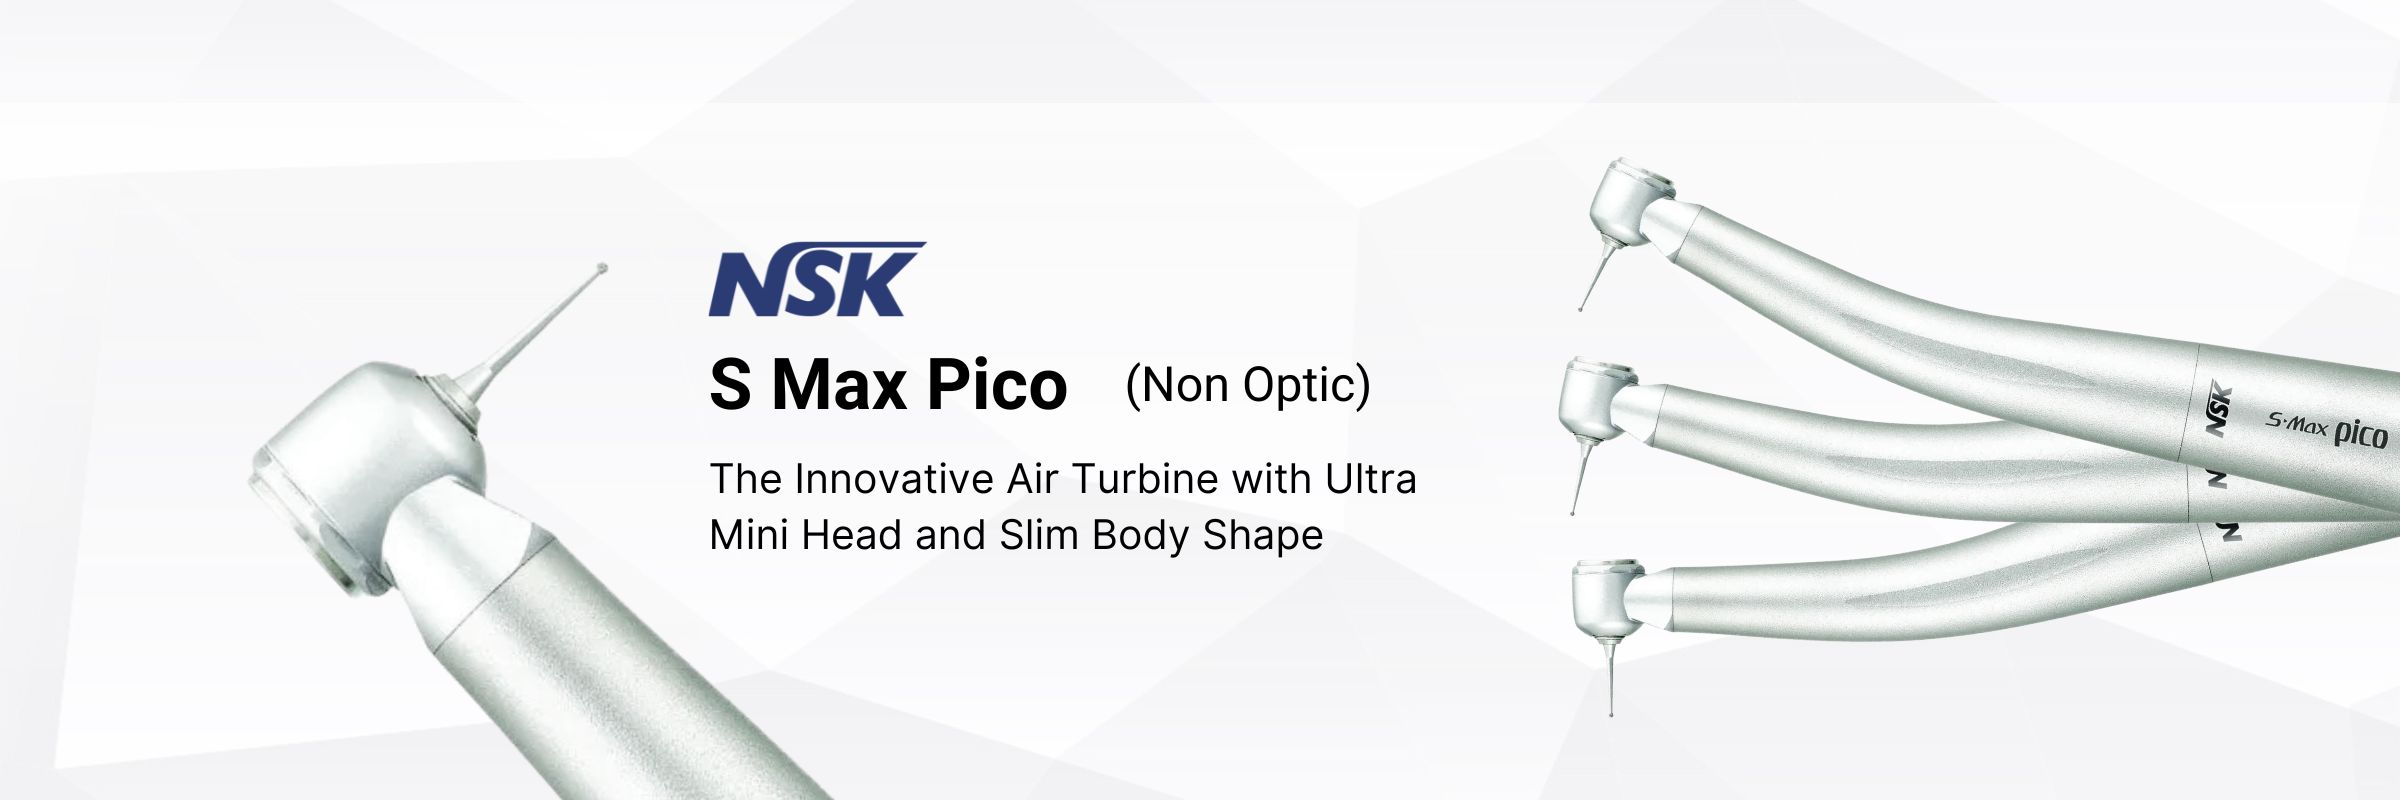 NSK S Max Pico Non Optic Handpiece